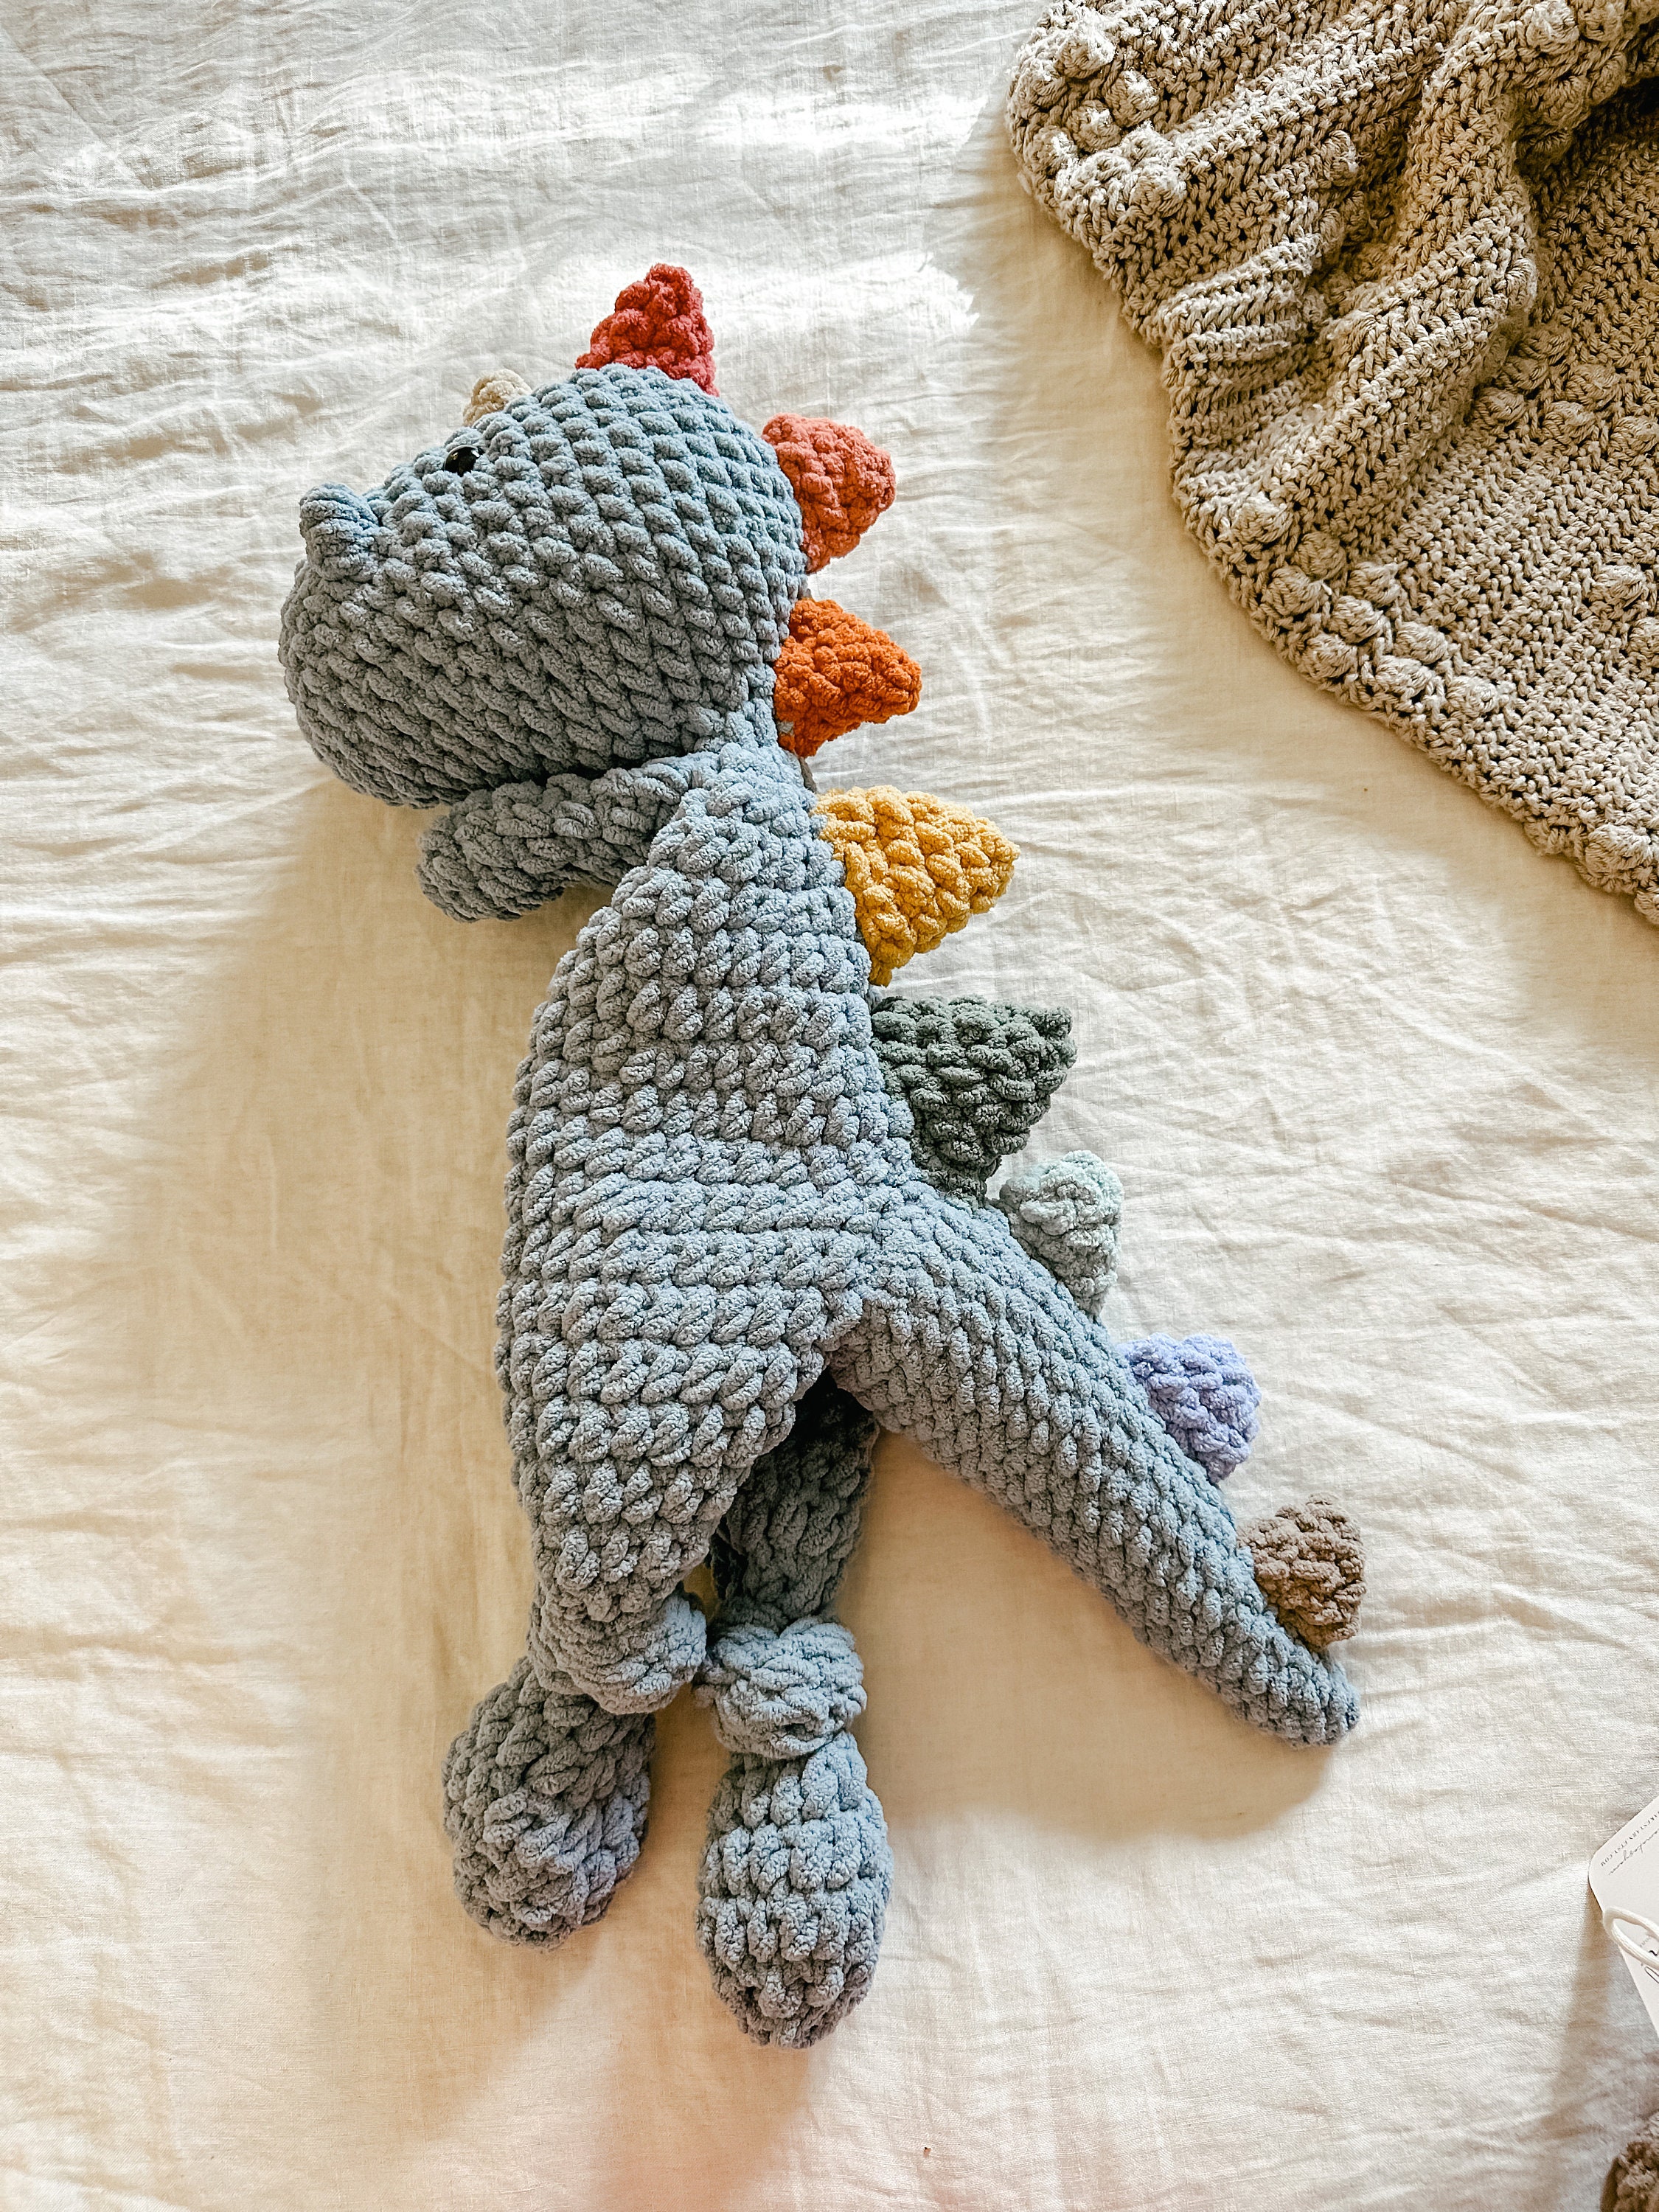 🦖 🧶 how to knot a lovey! Crochet Dino! #amigurumi #crochetting